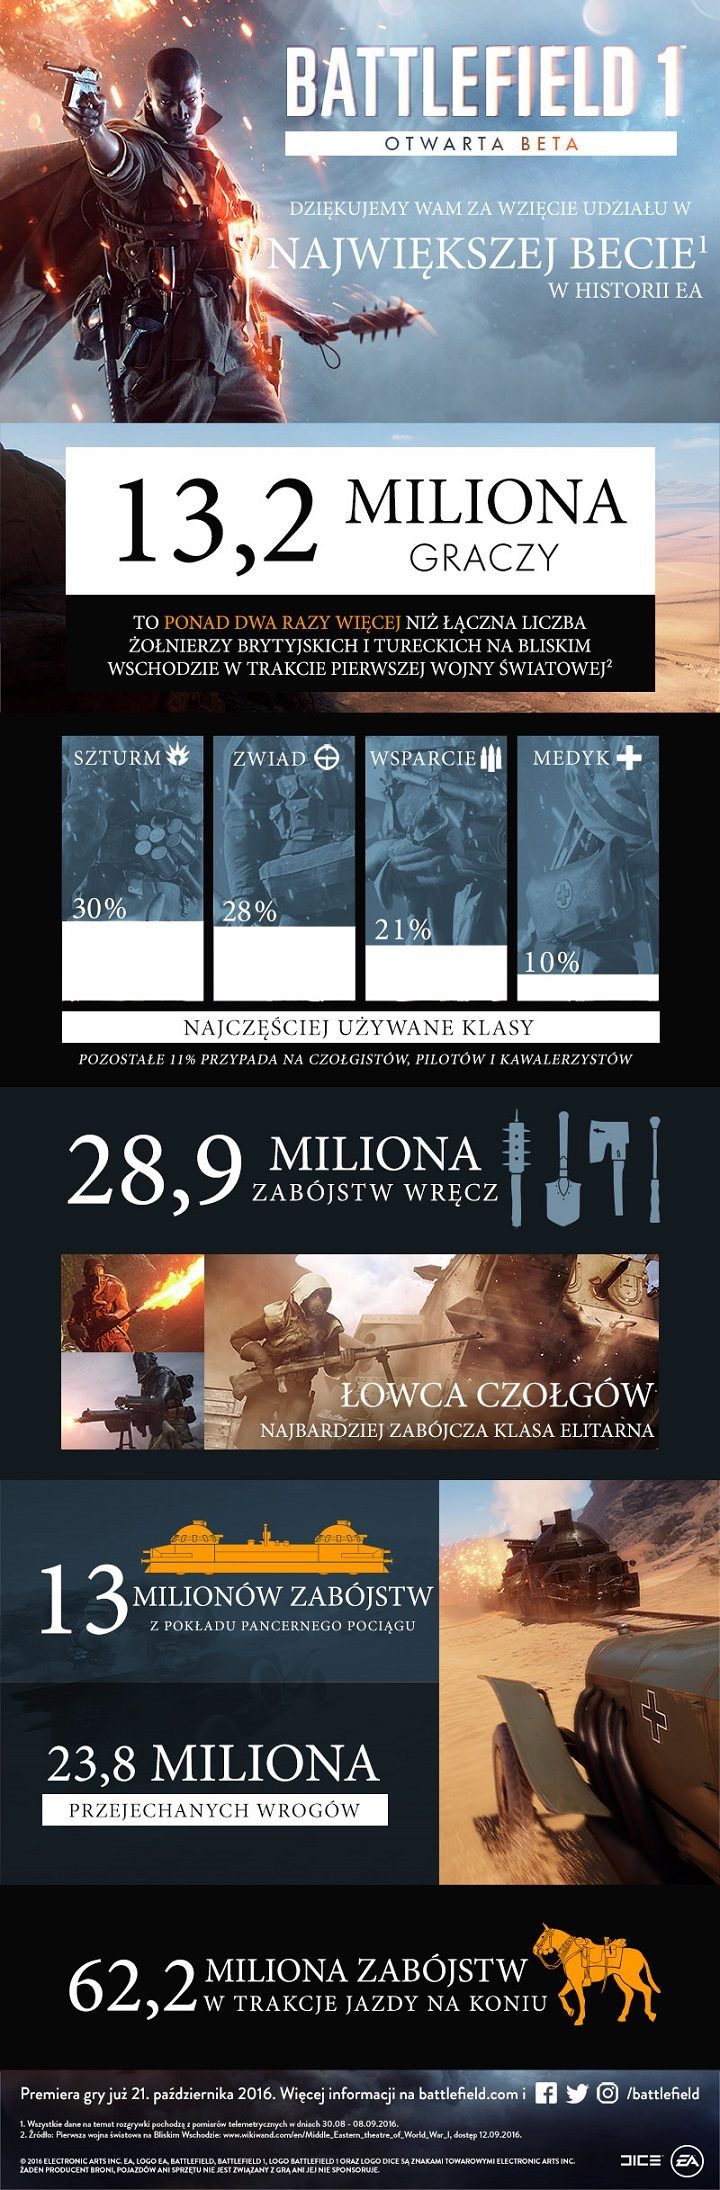 W becie Battlefielda 1 wzięło udział ponad 13 milionów graczy - ilustracja #2